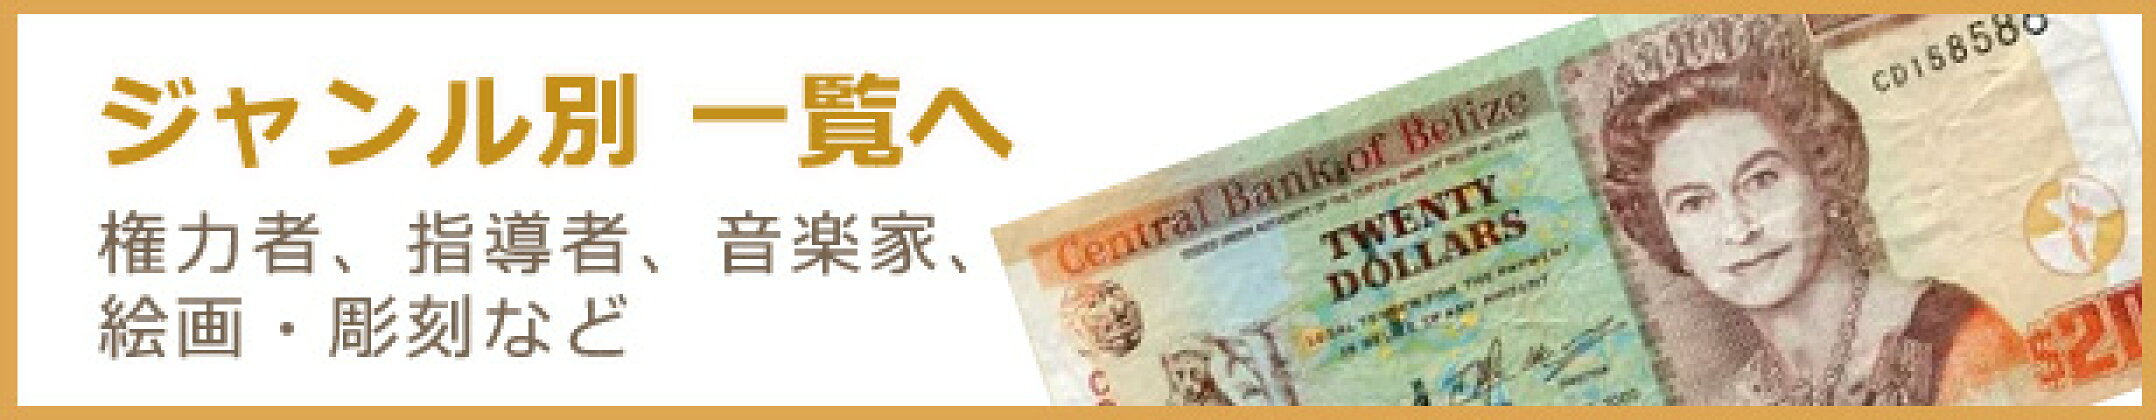 ジャンル別紙幣